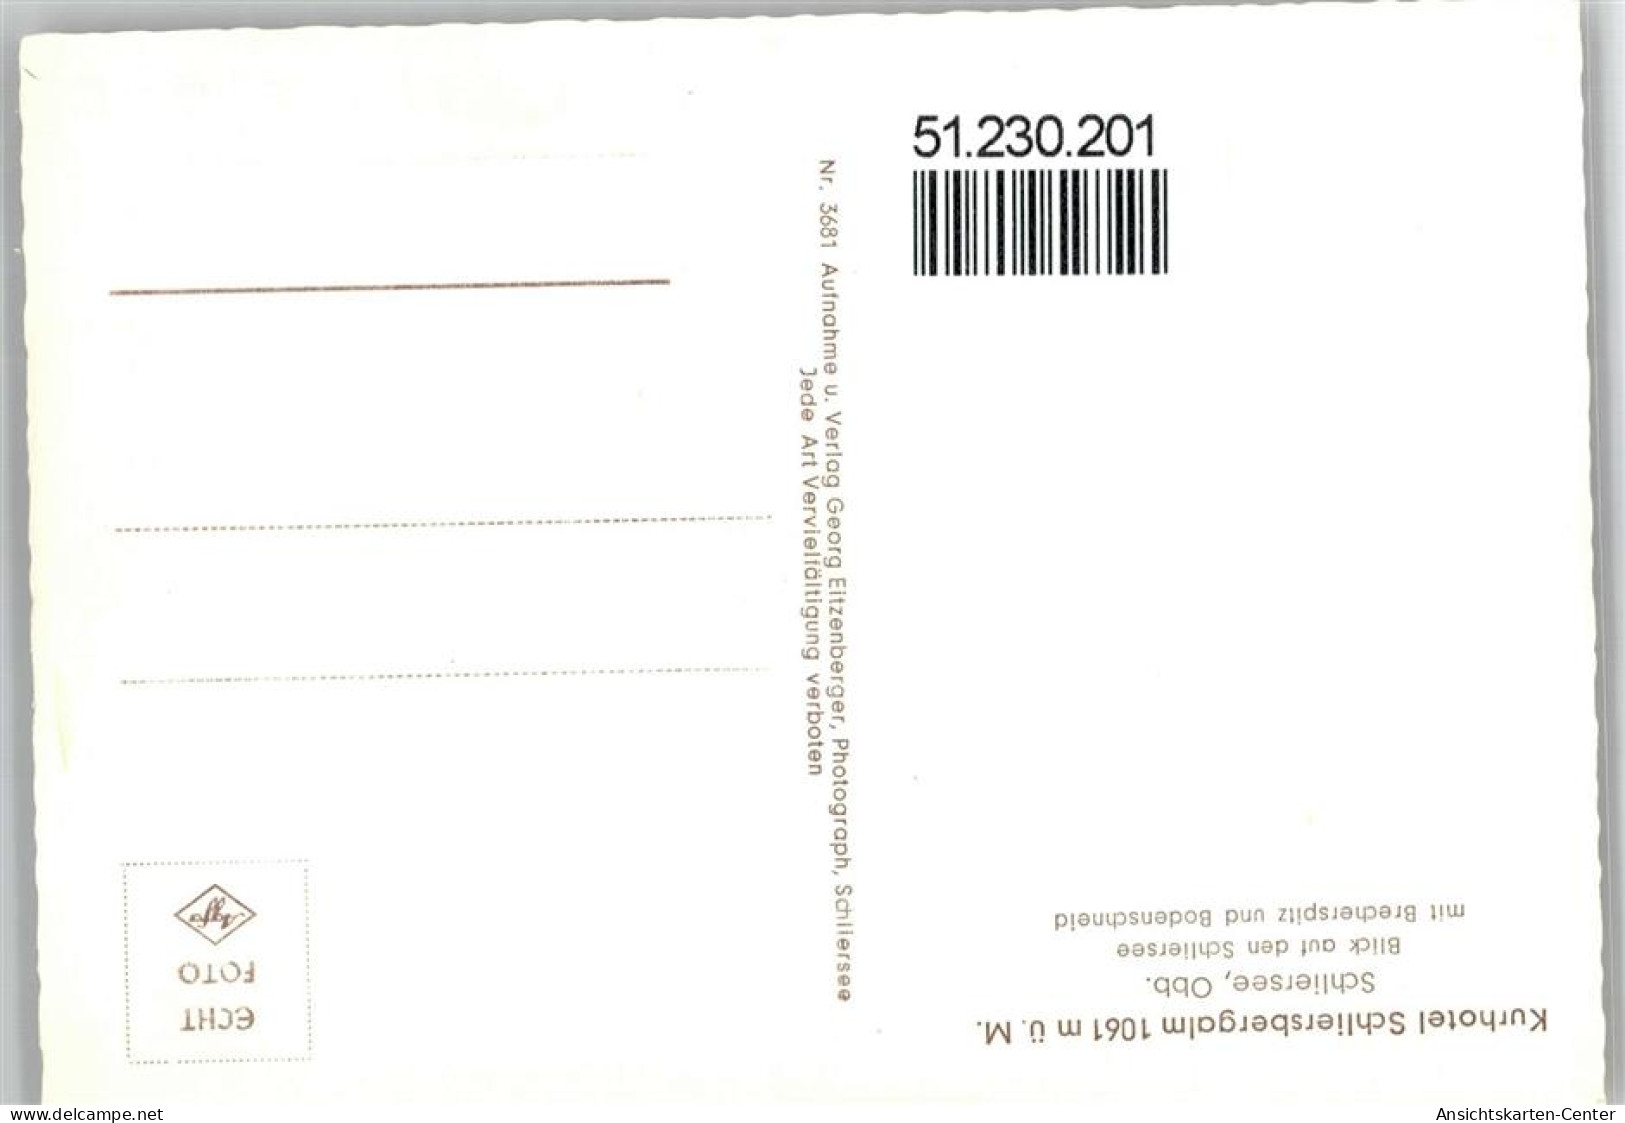 51230201 - Schliersee - Schliersee